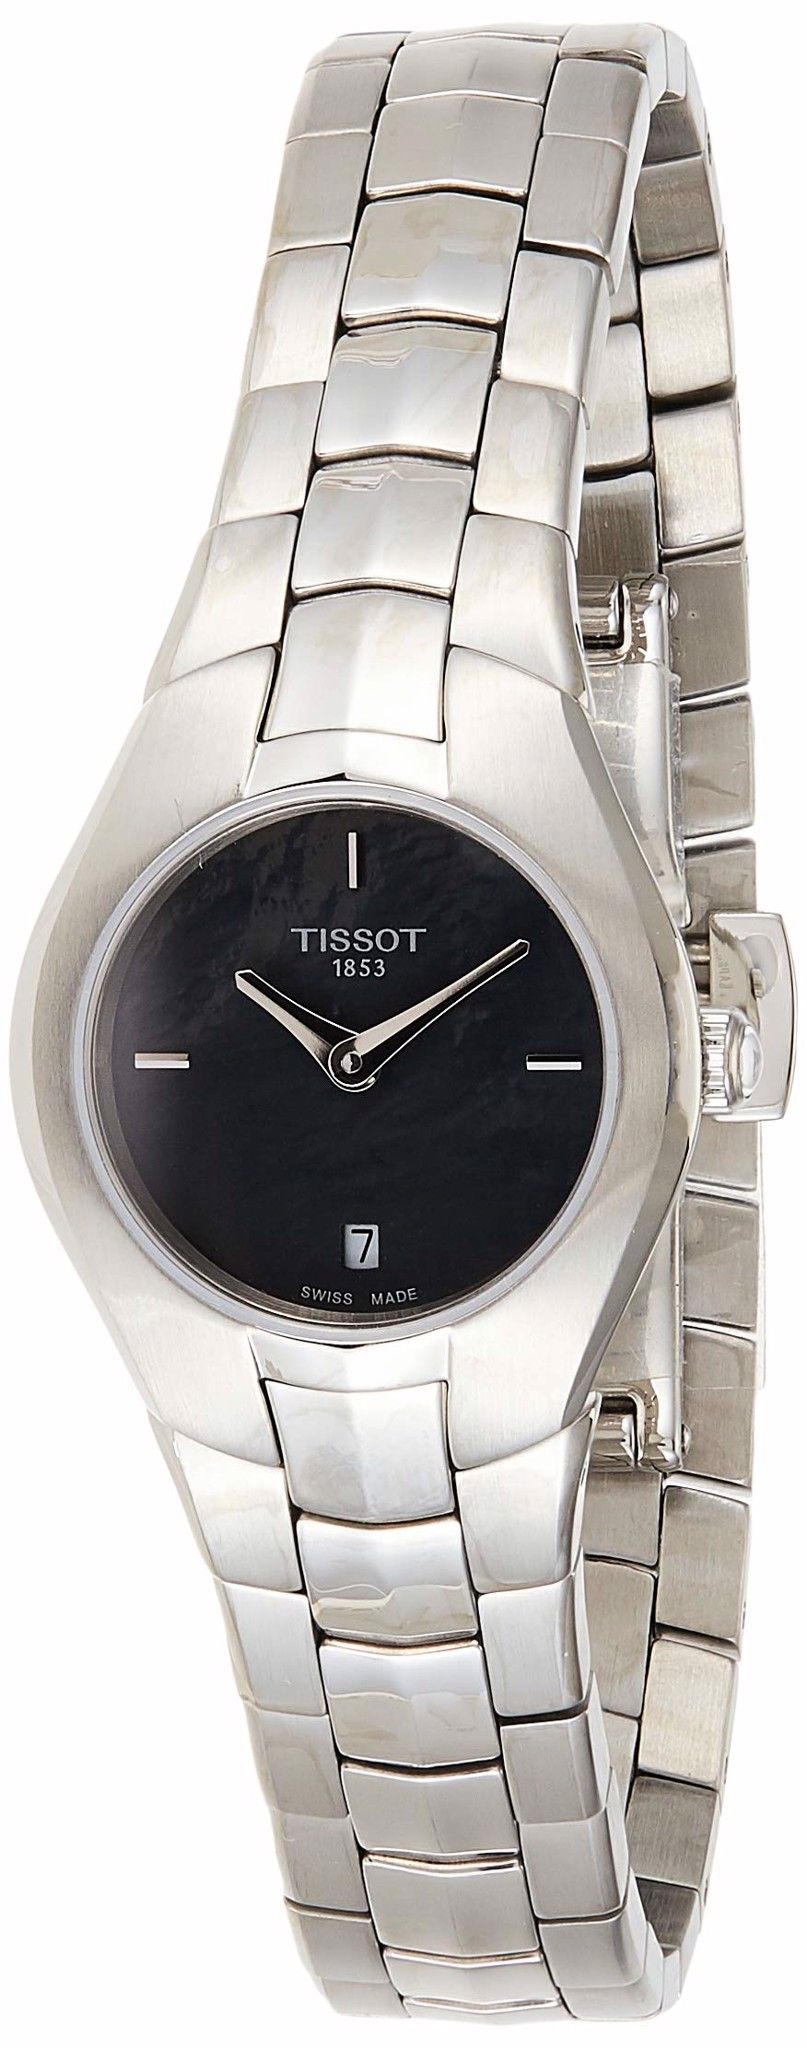 T Trend T Round Black Dial Ladies Watch T0960091112100